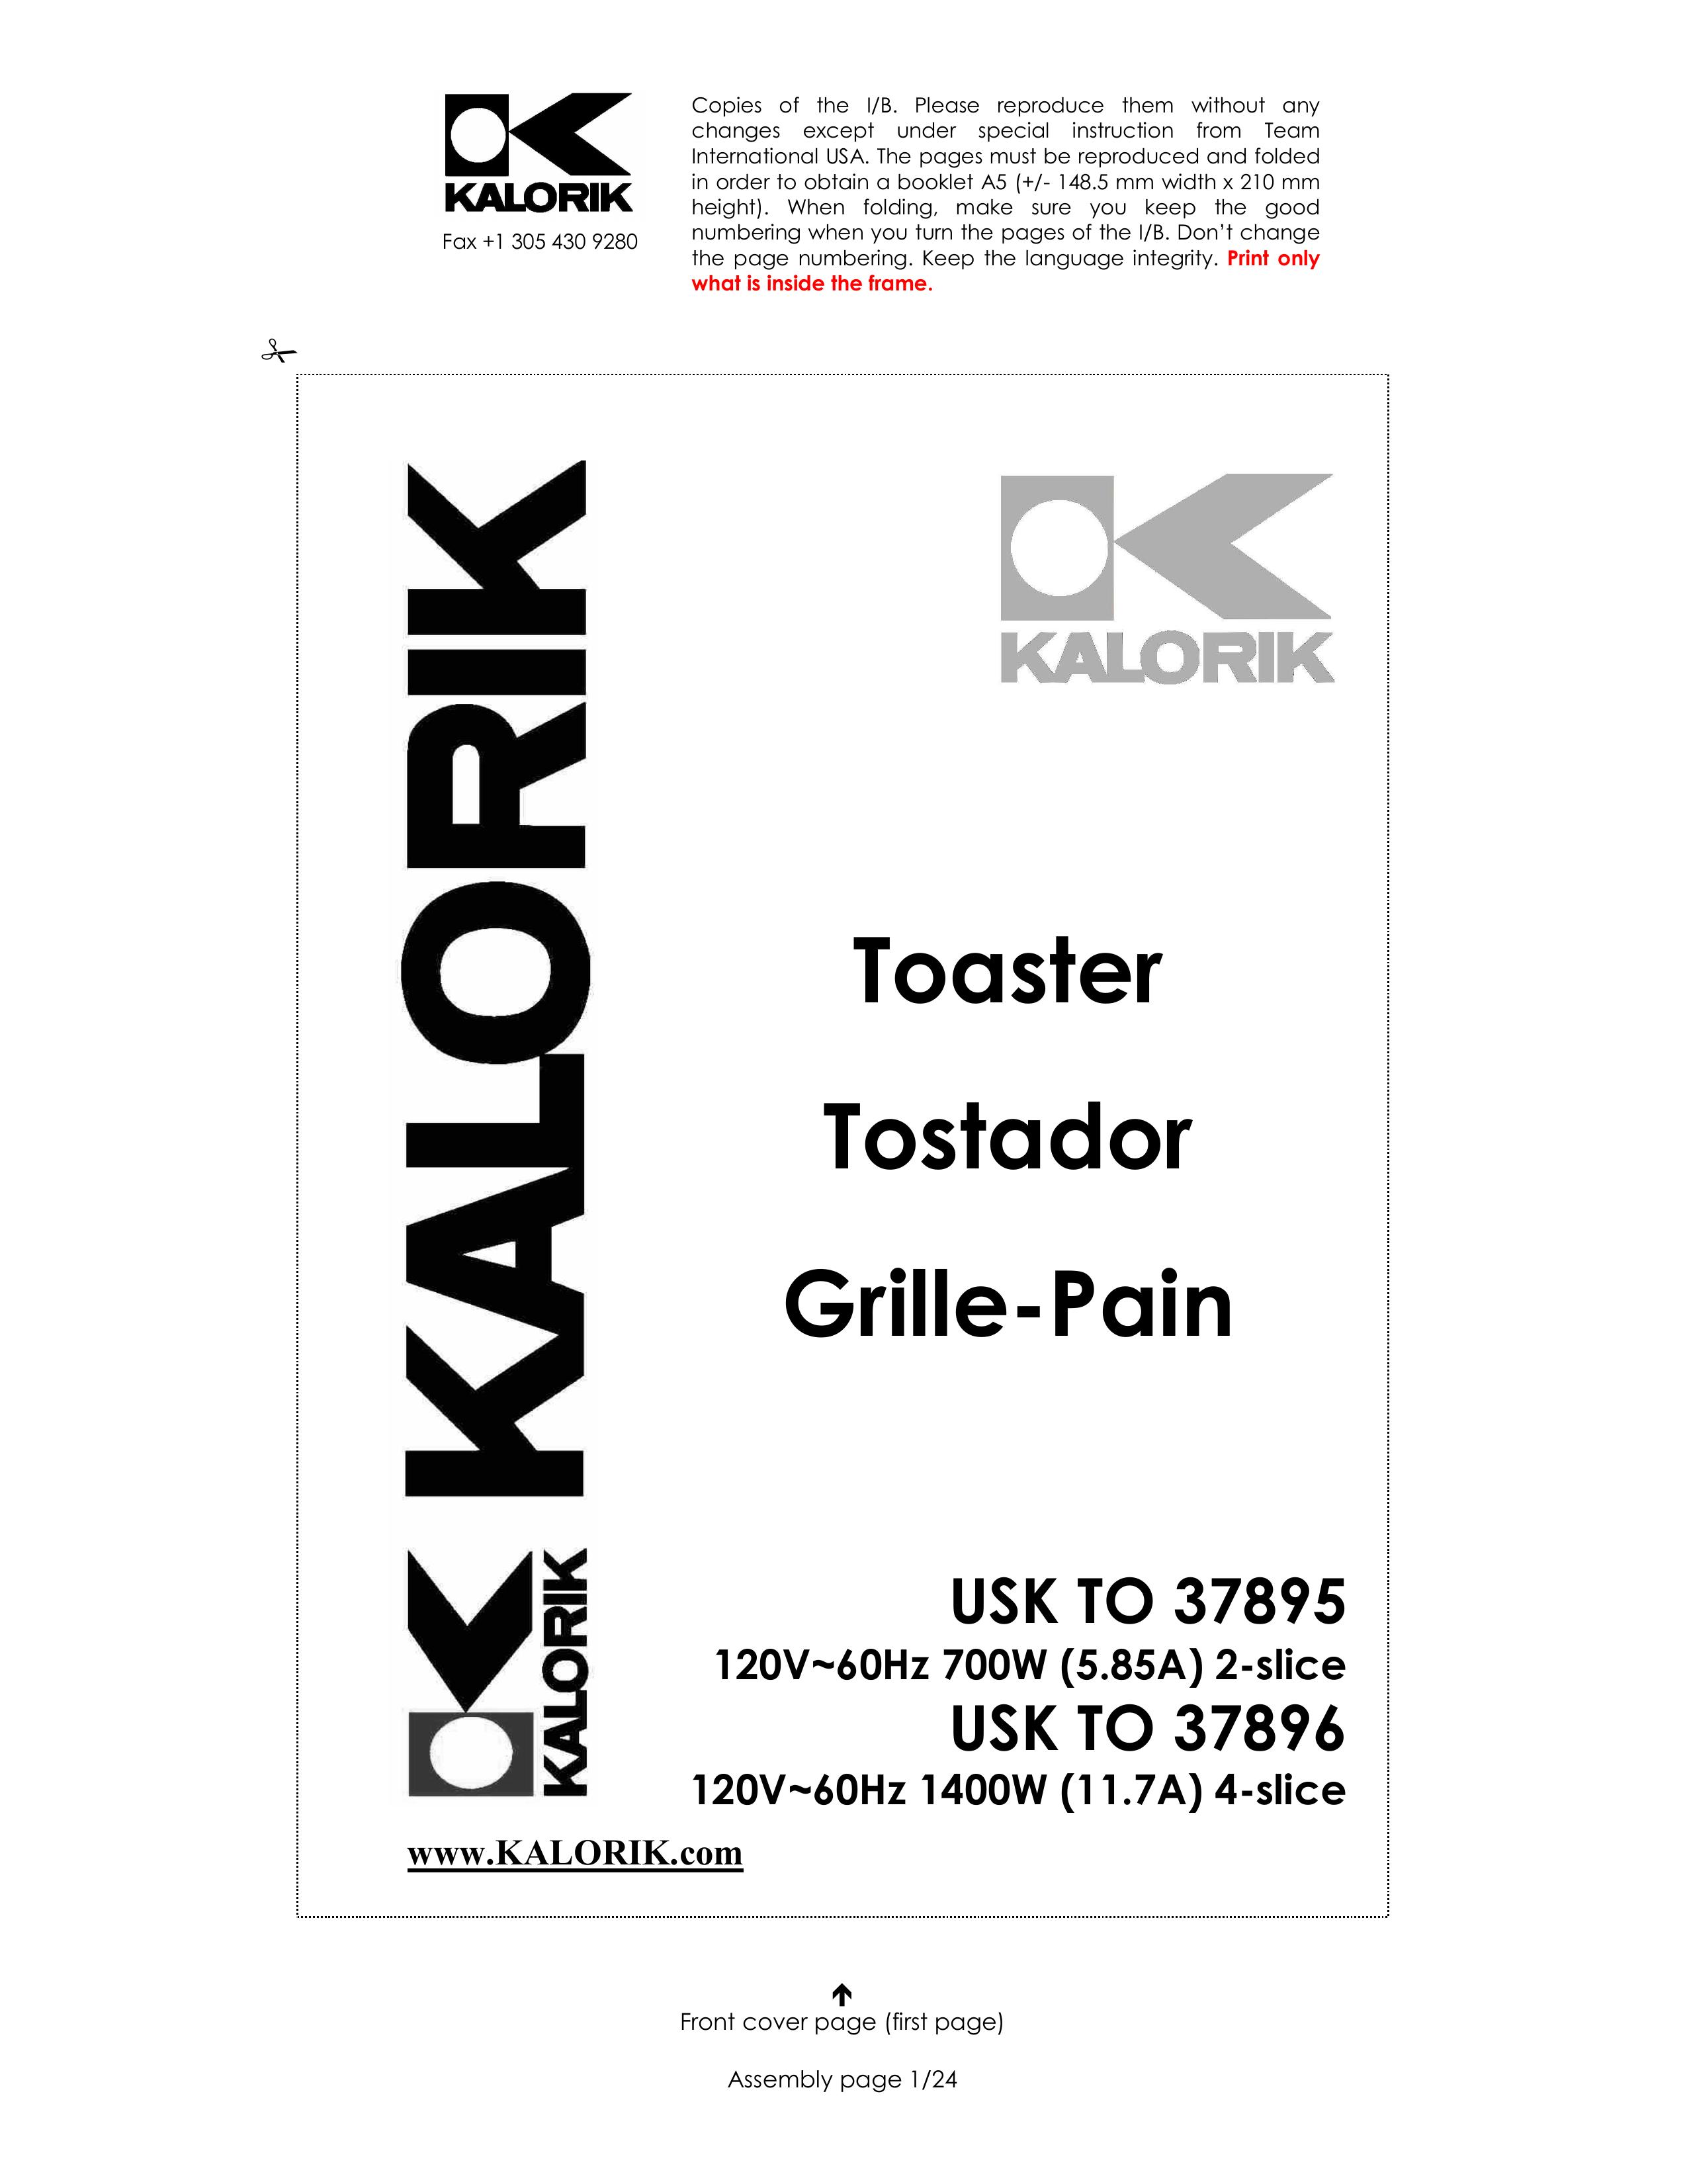 Kalorik USK TO 37896 Toaster User Manual